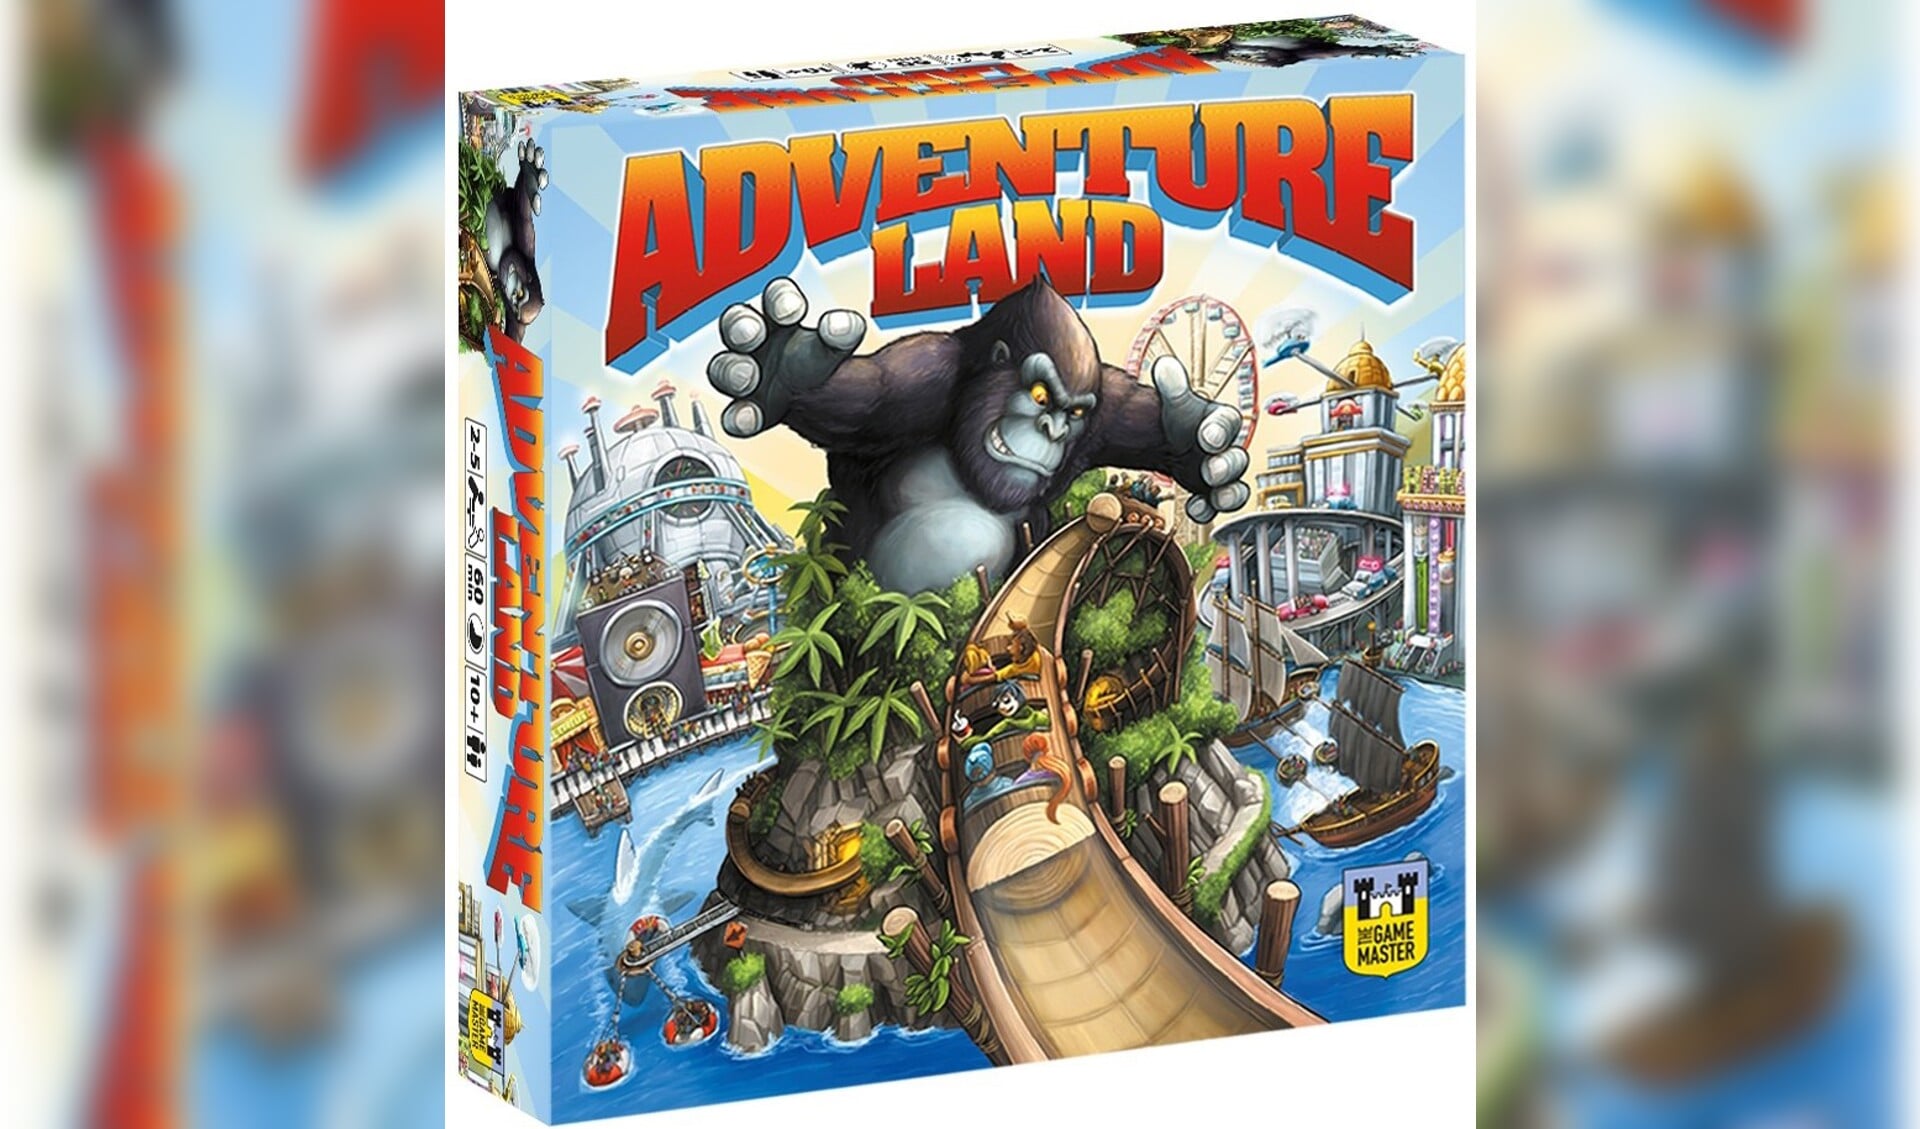 Adventure Land is bedacht door Arjo van Houwelingen uit Gorinchem en Sander Hogervorst uit Dalem